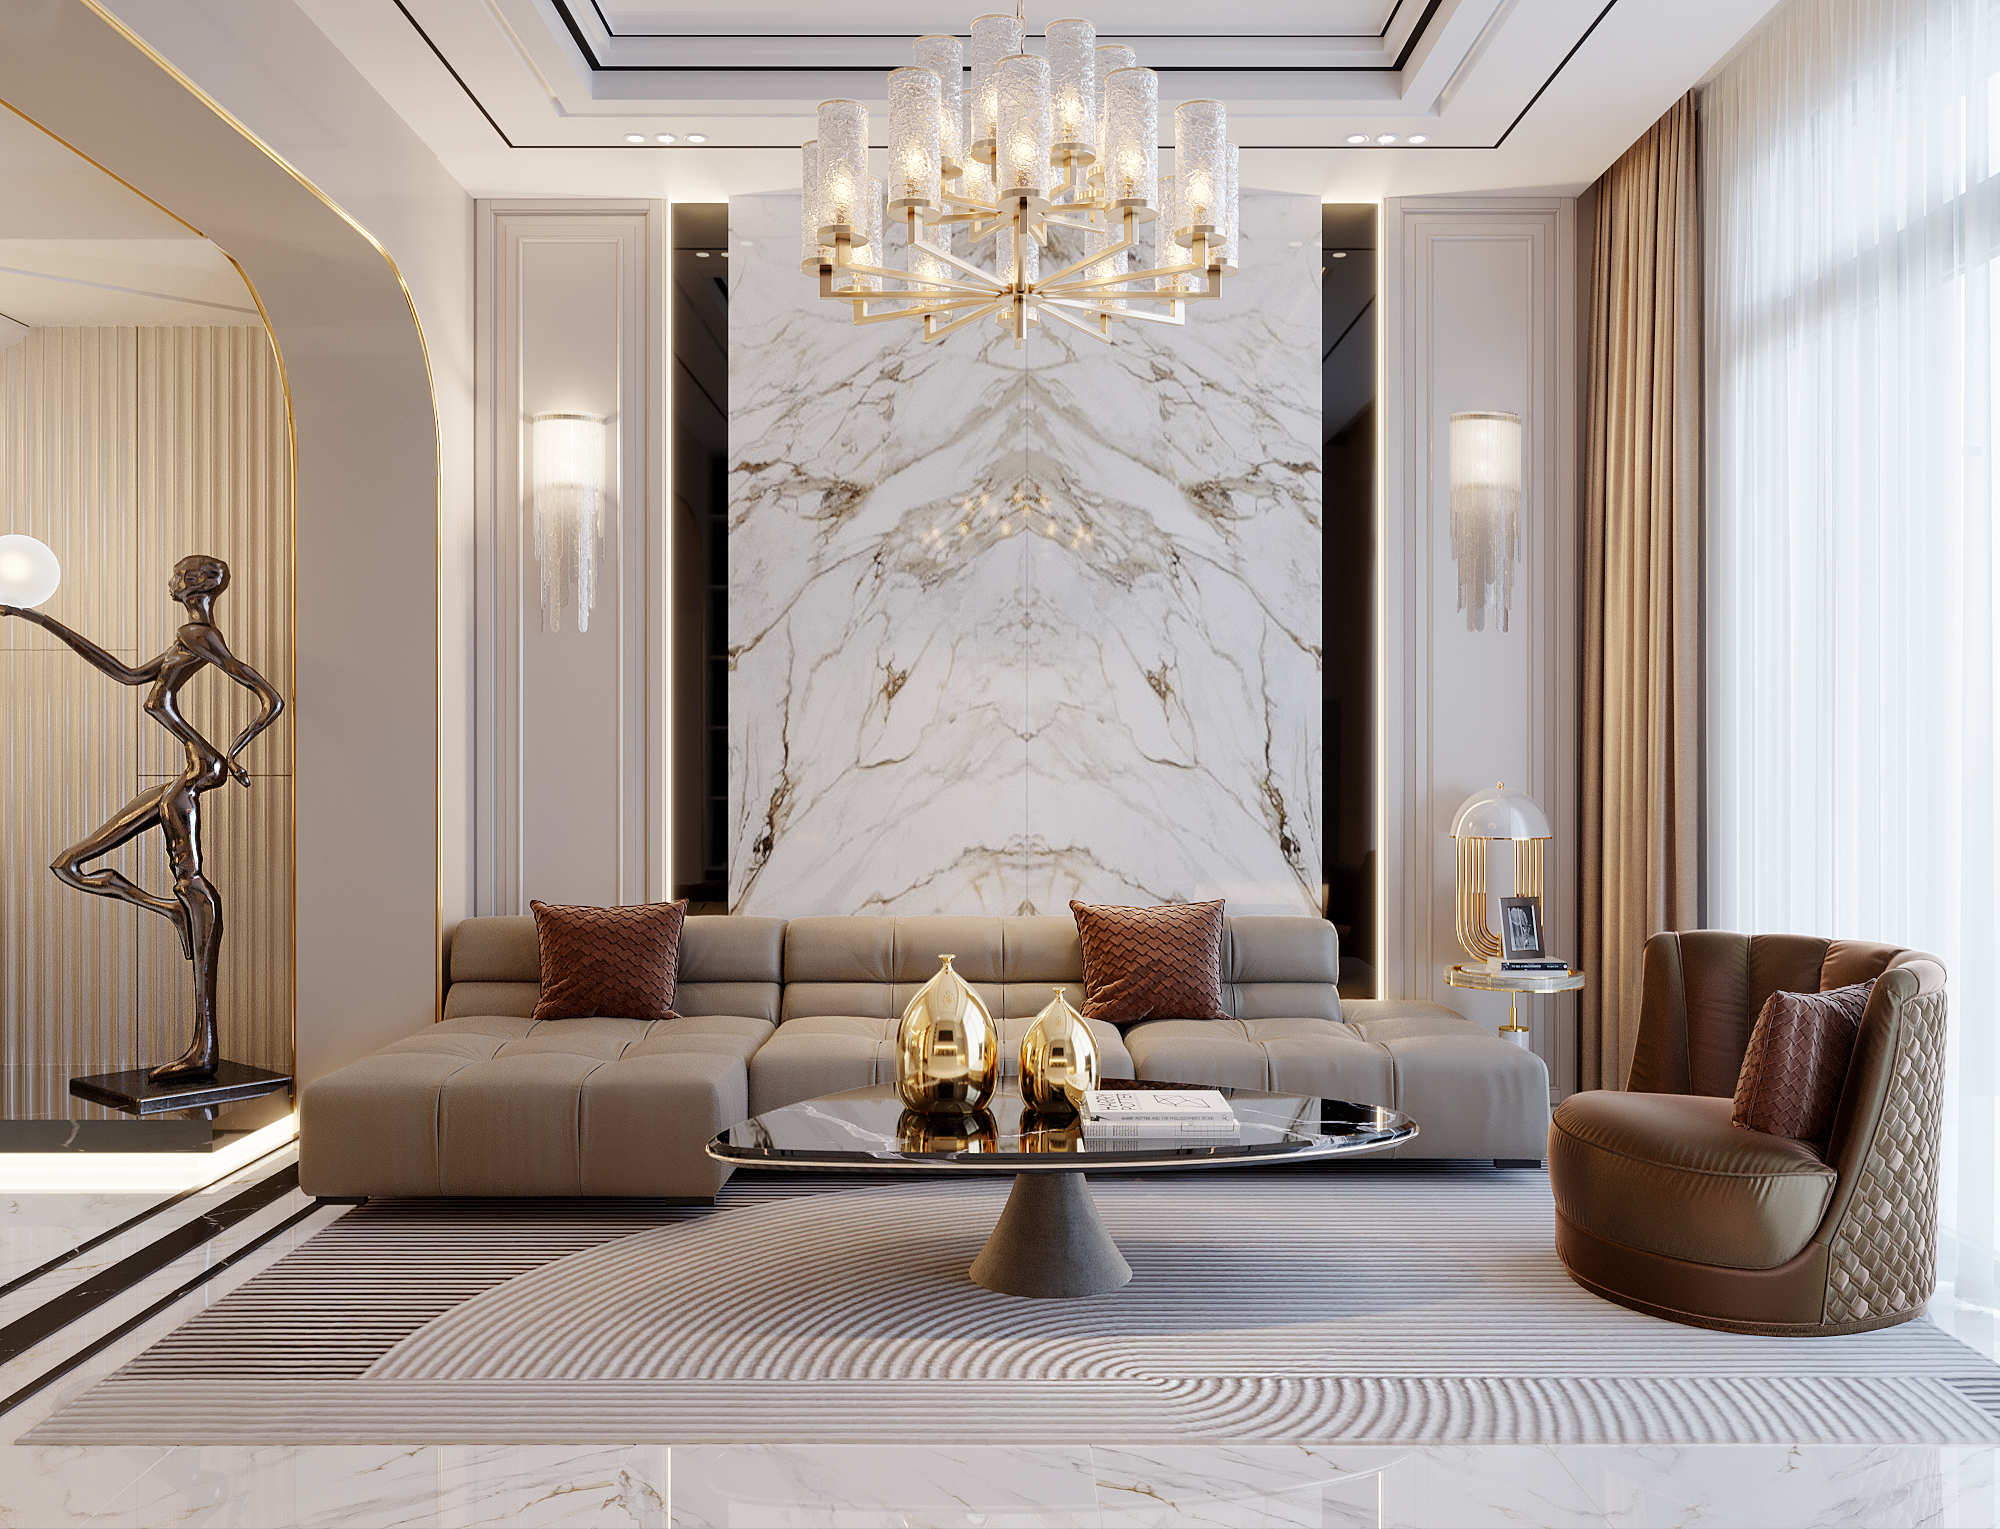 Phong cách thiết kế nội thất tân cổ điển cùng tone màu kem và vàng gold - sang trọng đẳng cấp.